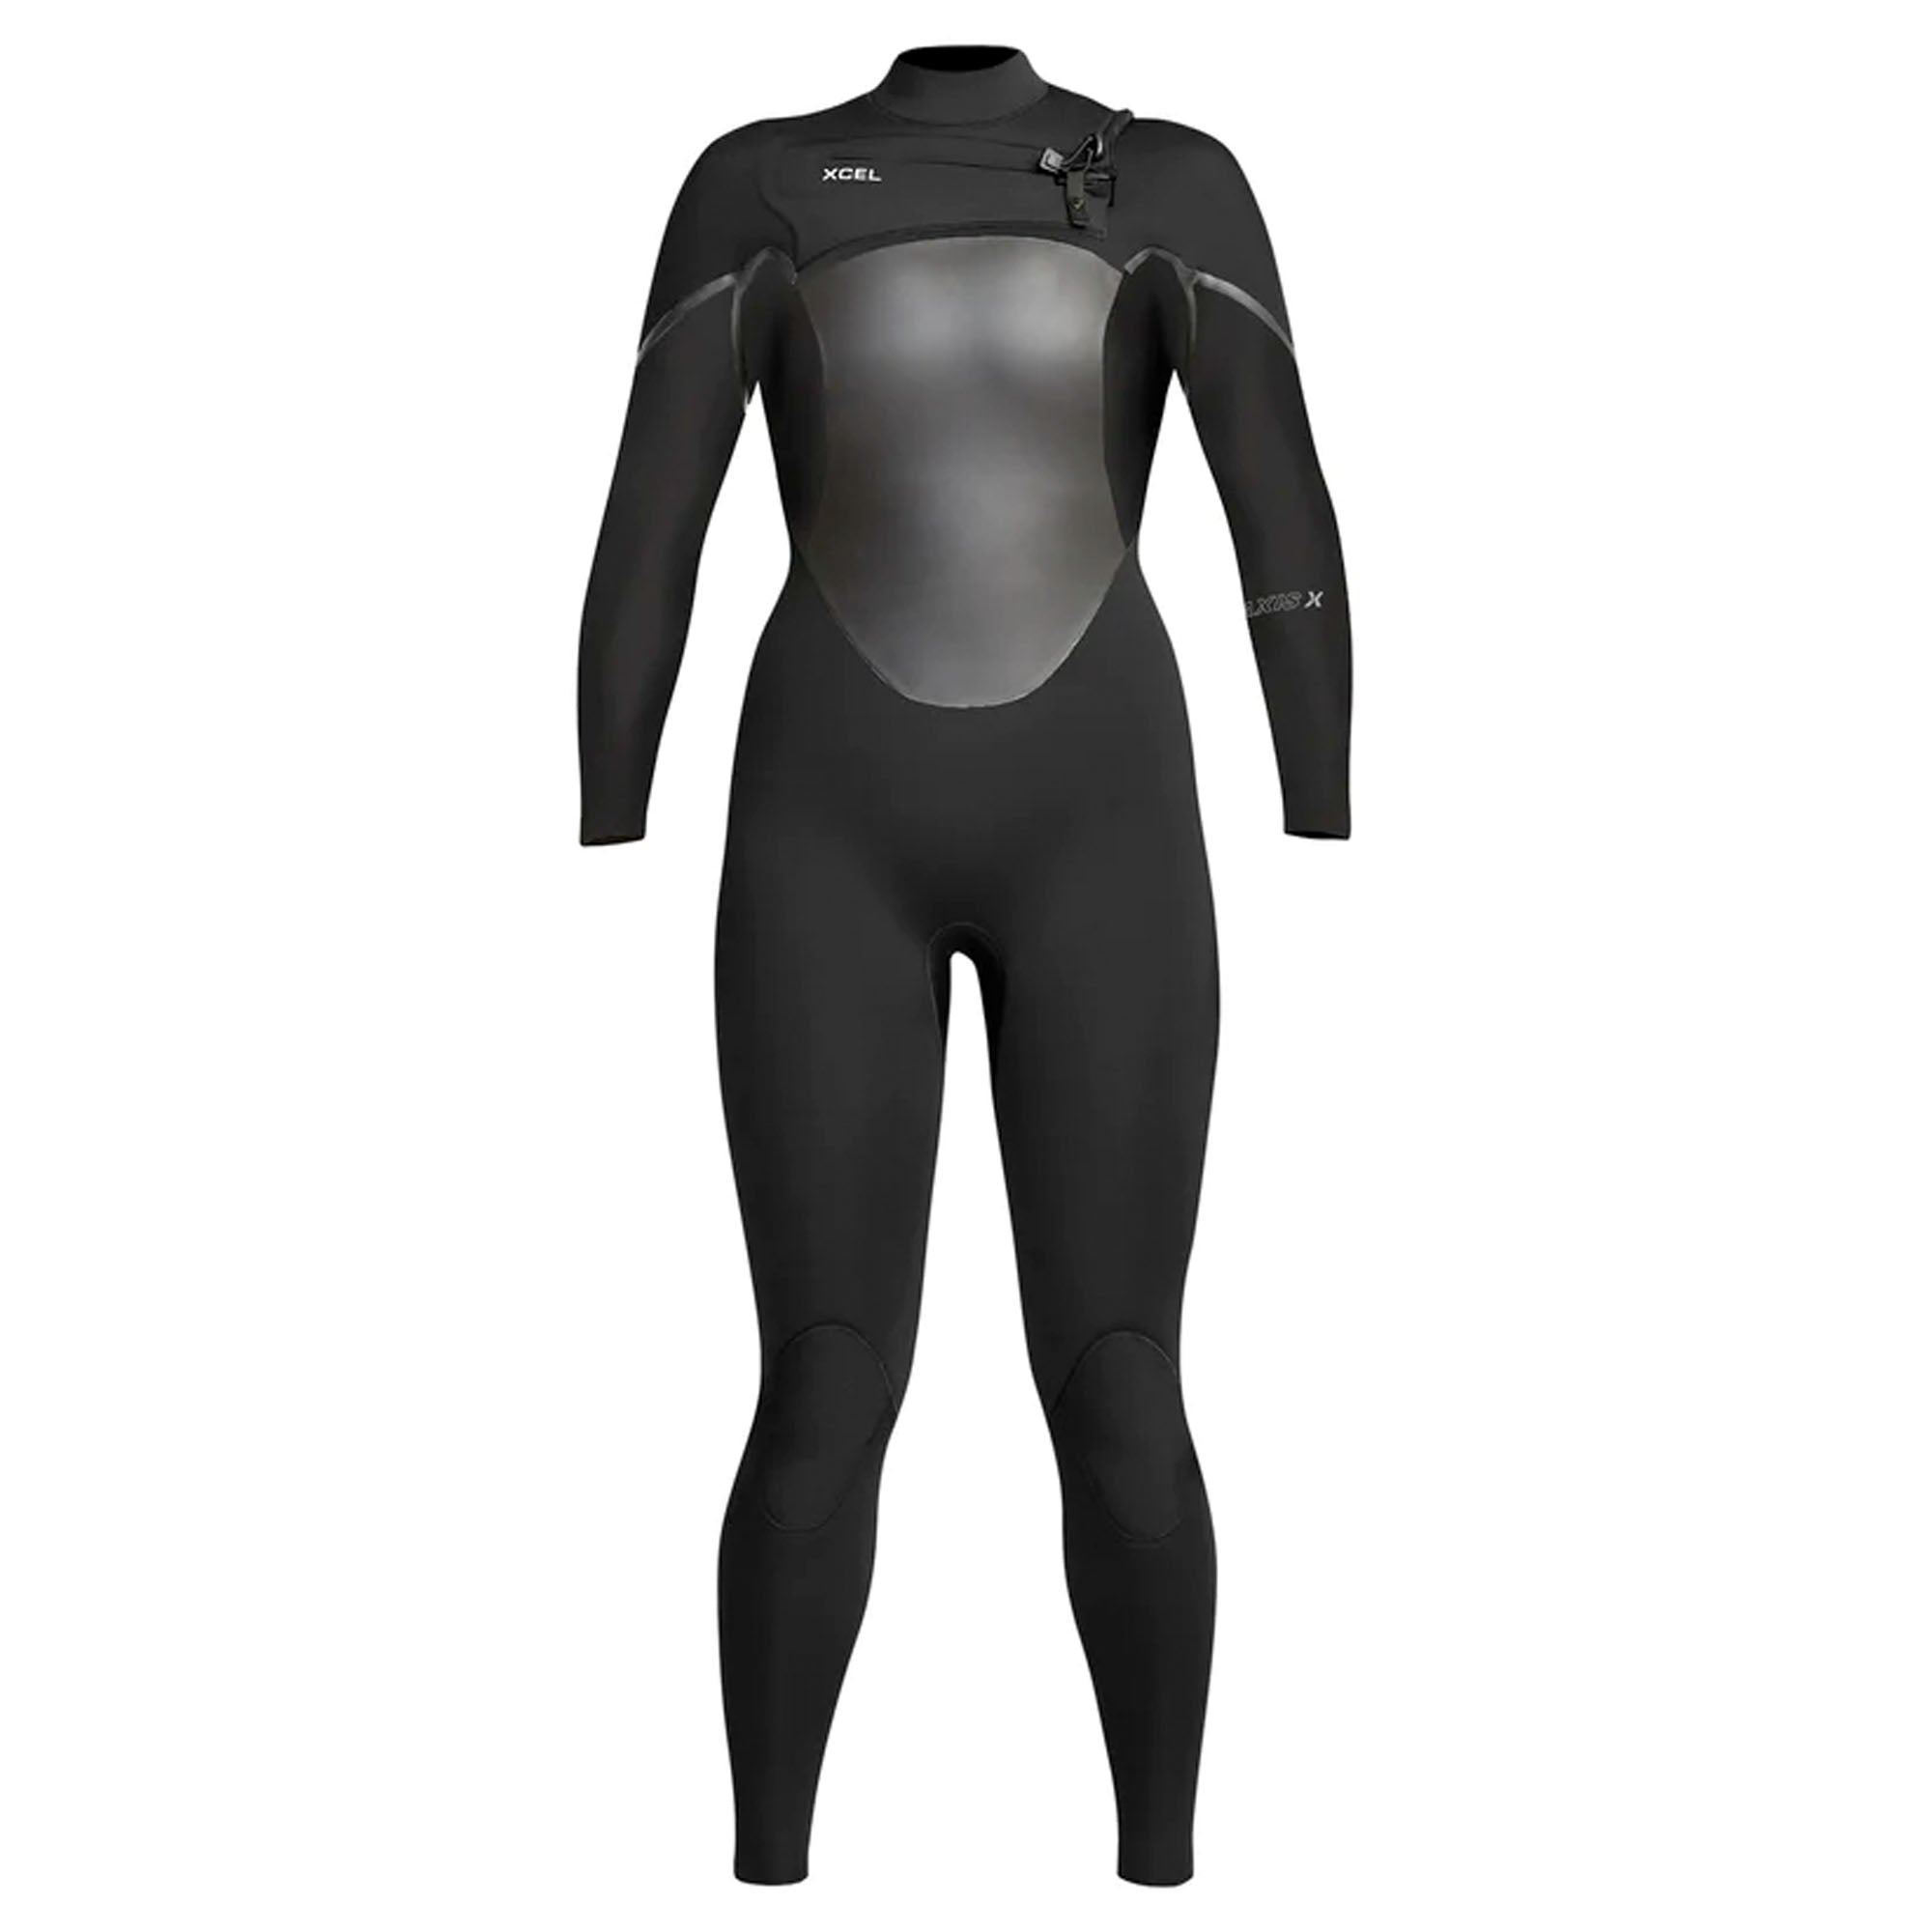 Xcel Axis X 3/2 Chest-Zip Women's Fullsuit Wetsuit